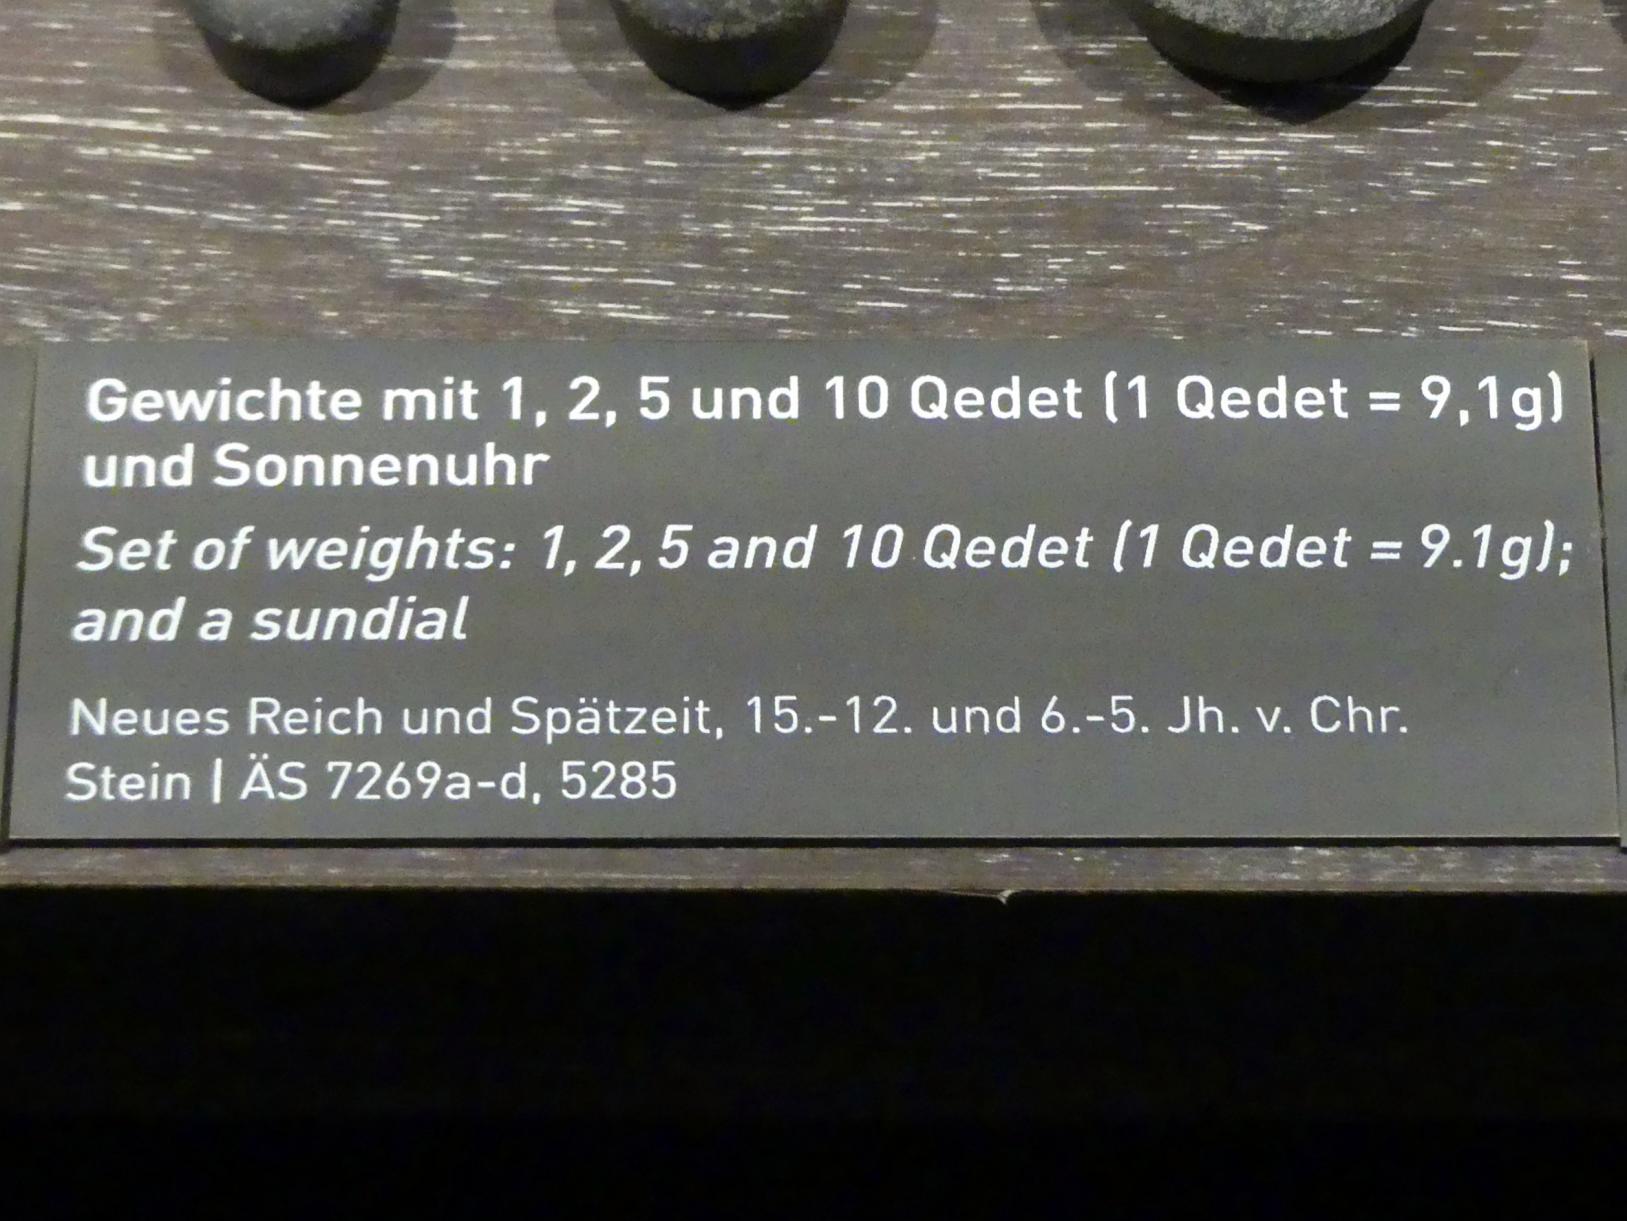 Gewichte mit 1, 2, 5 und 10 Qedet (1 Qedet = 9,1g), Neues Reich, 953 - 887 v. Chr., 1500 - 1100 v. Chr., Bild 2/2